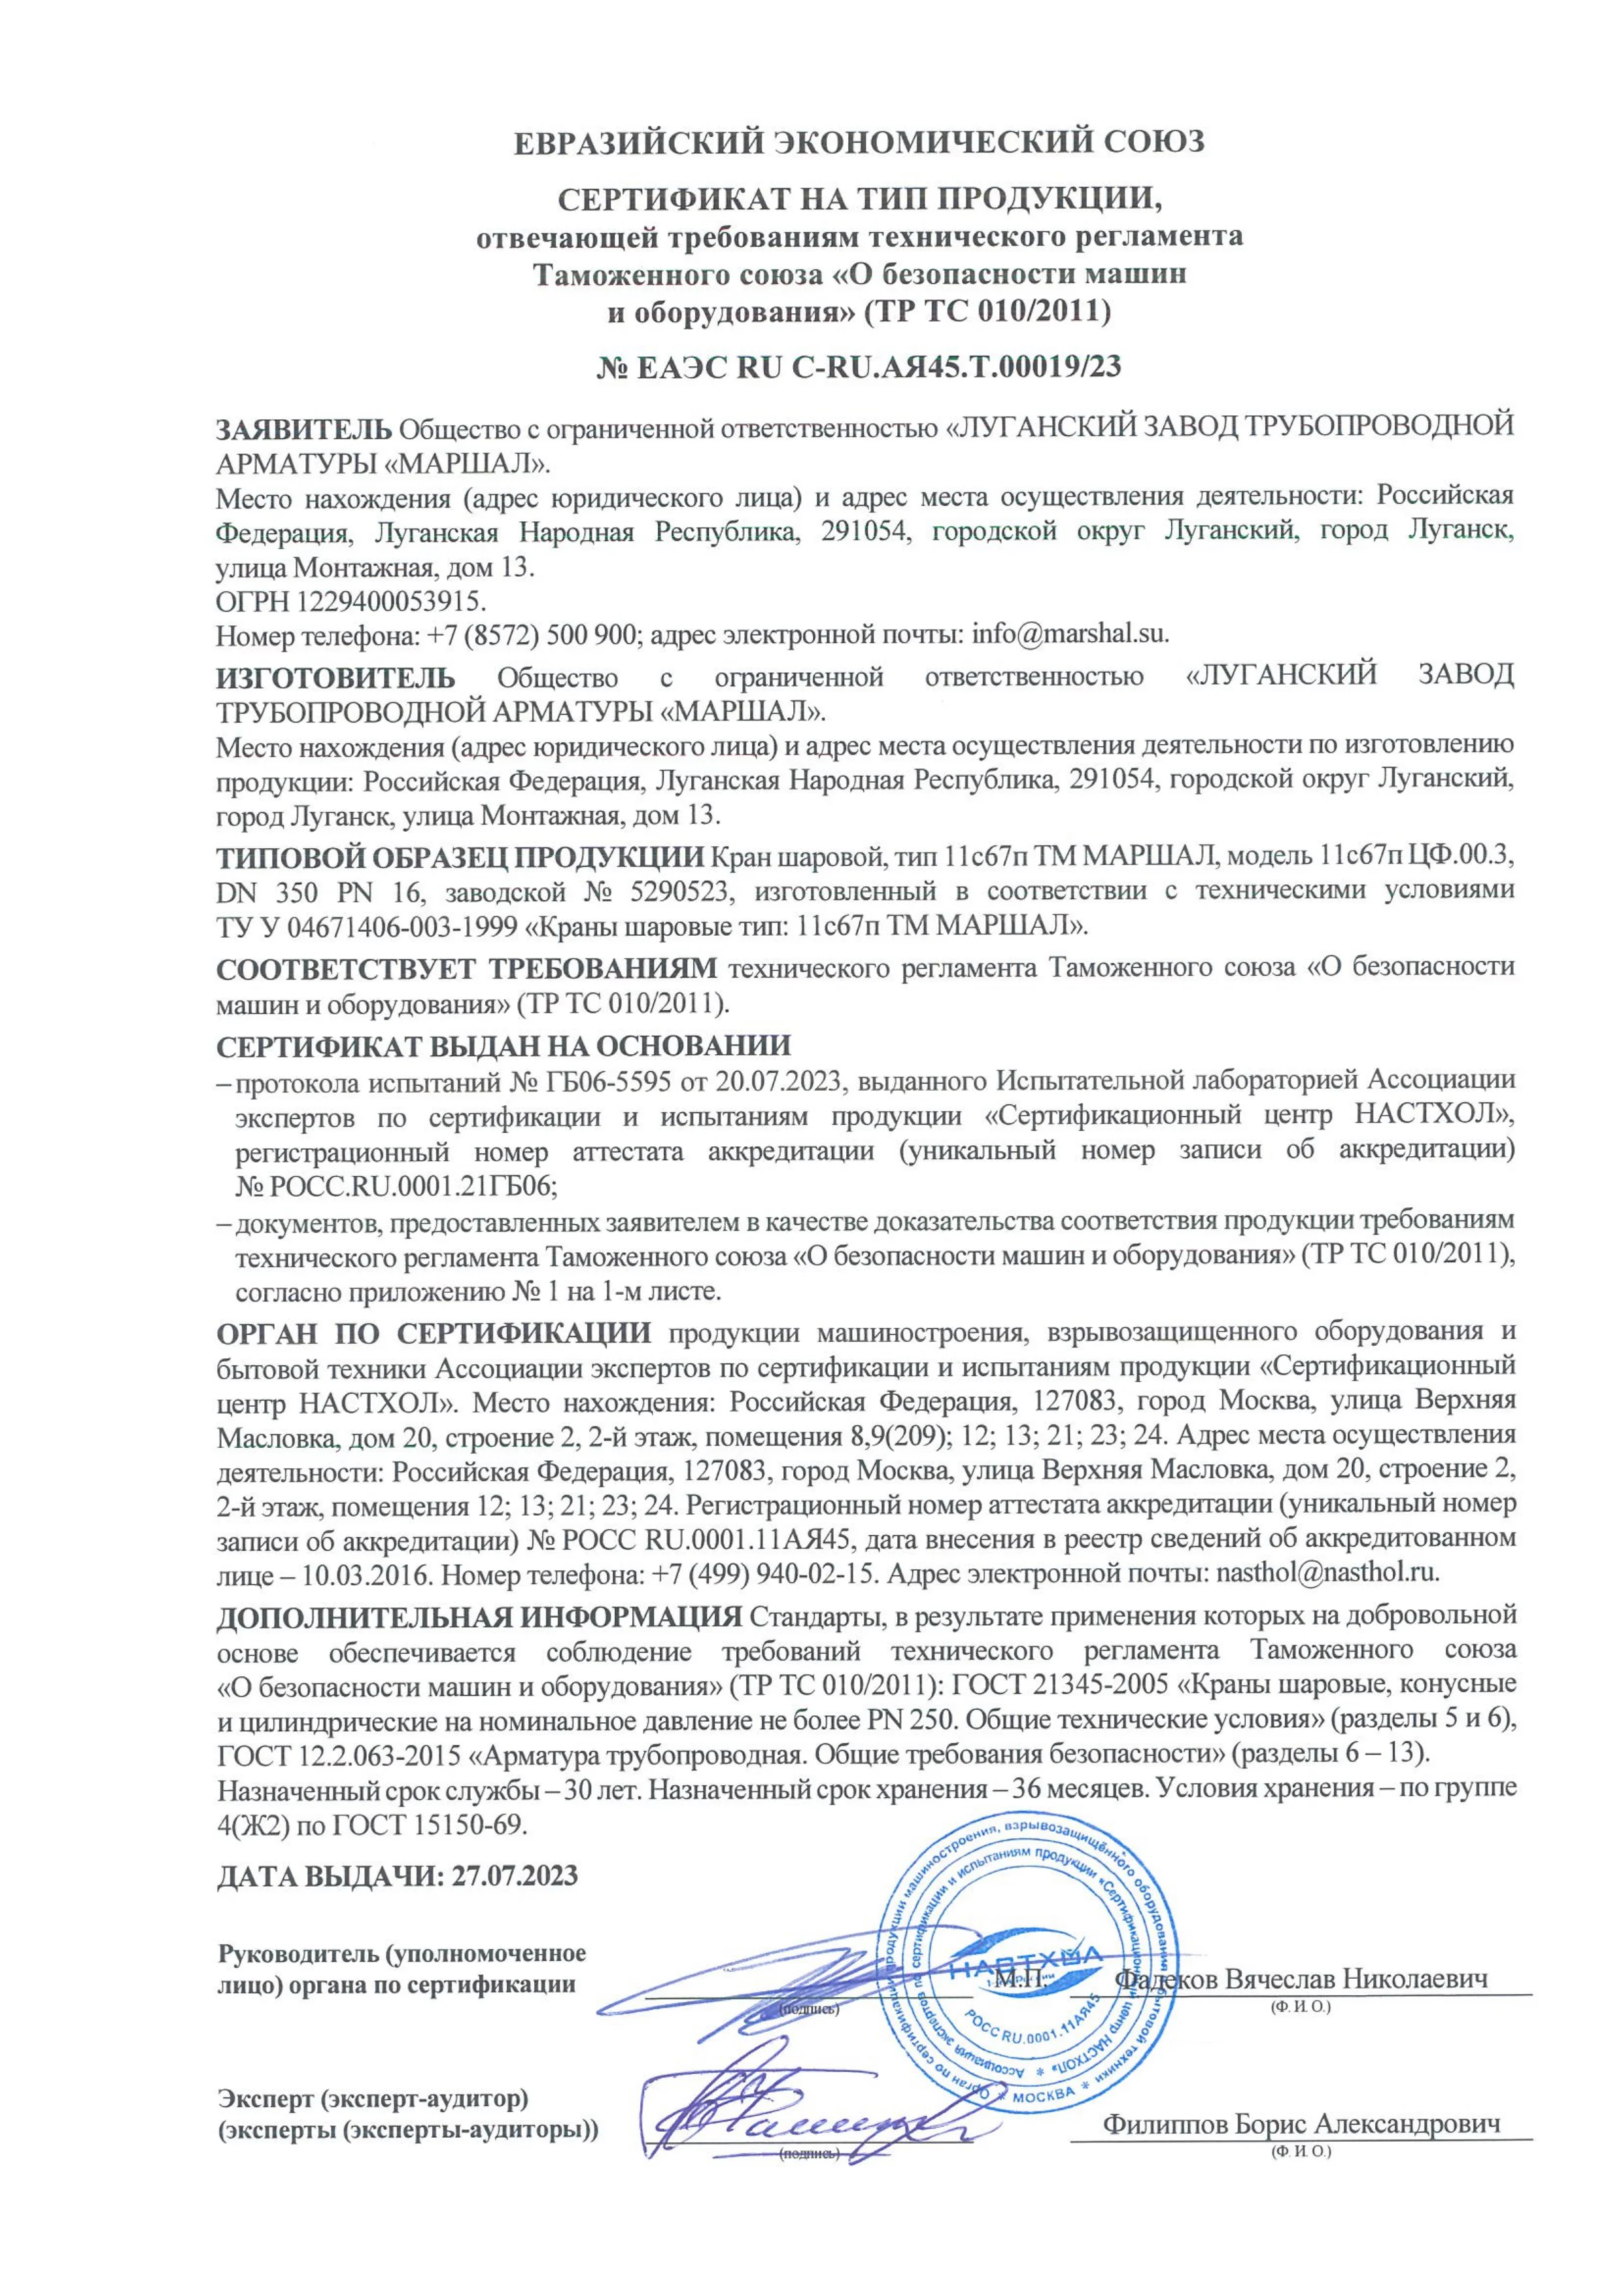 Сертификат соответствии  требованиям ТР ТС 010/2011 на краны шаровые тип 11с67п